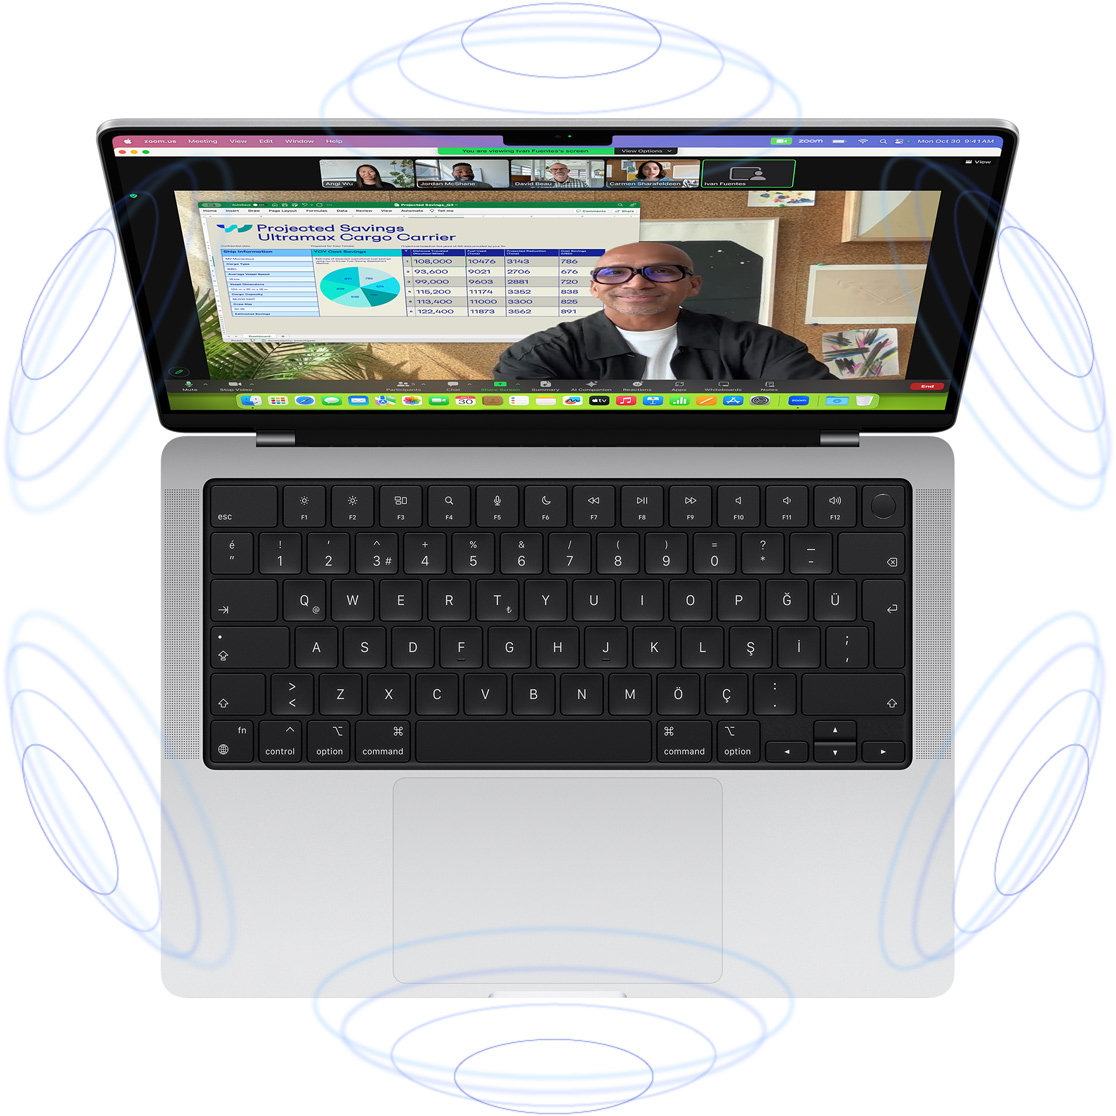 Uzamsal Ses teknolojisindeki 3 boyutluluk hissini vermek için mavi daire şekilleriyle çevrelenmiş MacBook Pro’dan yapılan görüntülü bir FaceTime araması